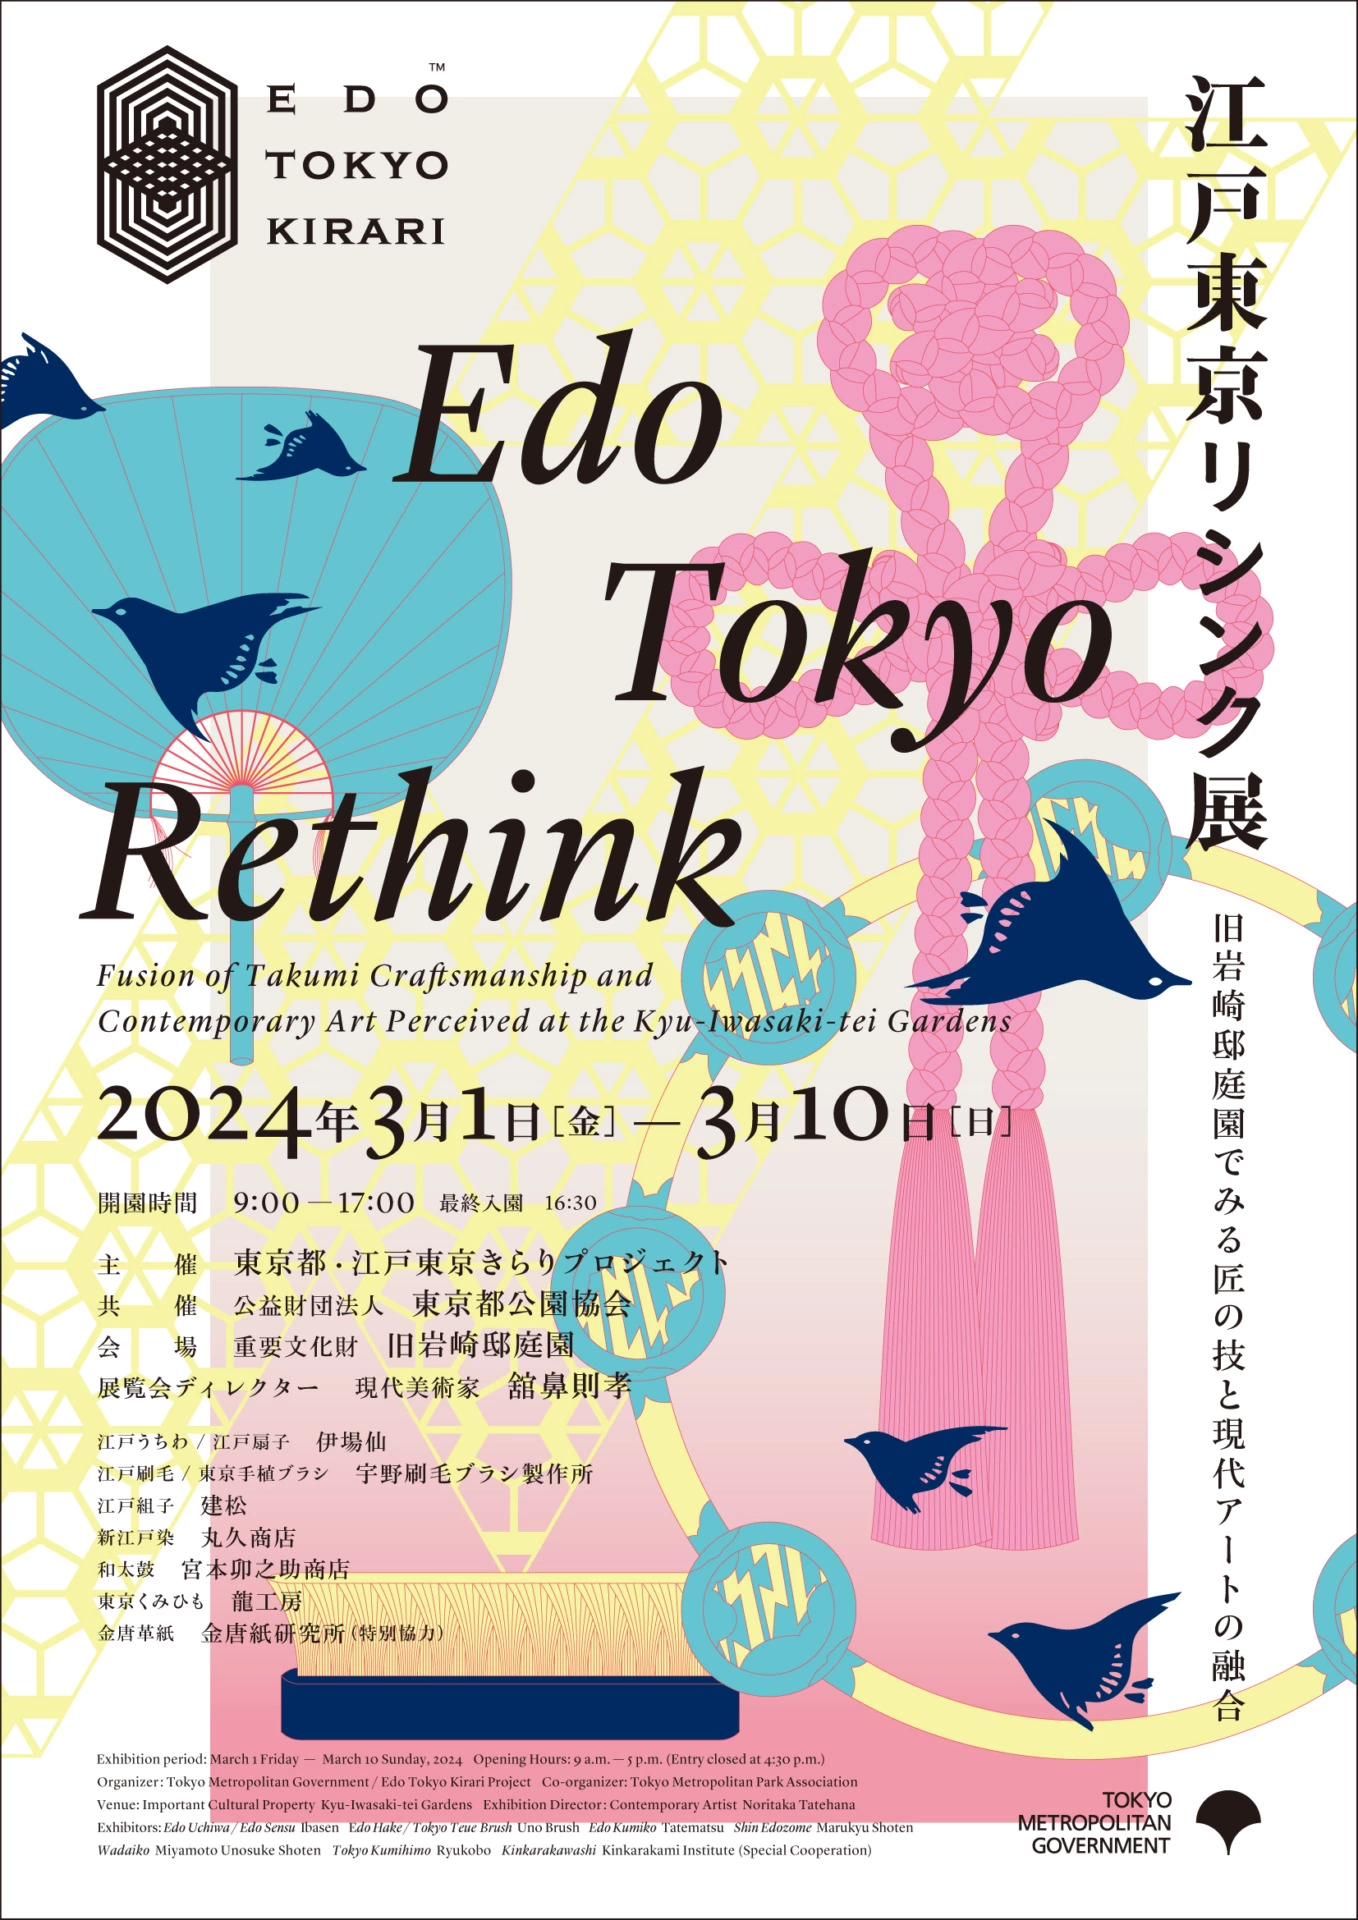 江戸東京リシンク展 ―旧岩崎邸庭園でみる匠の技と現代アートの融合―